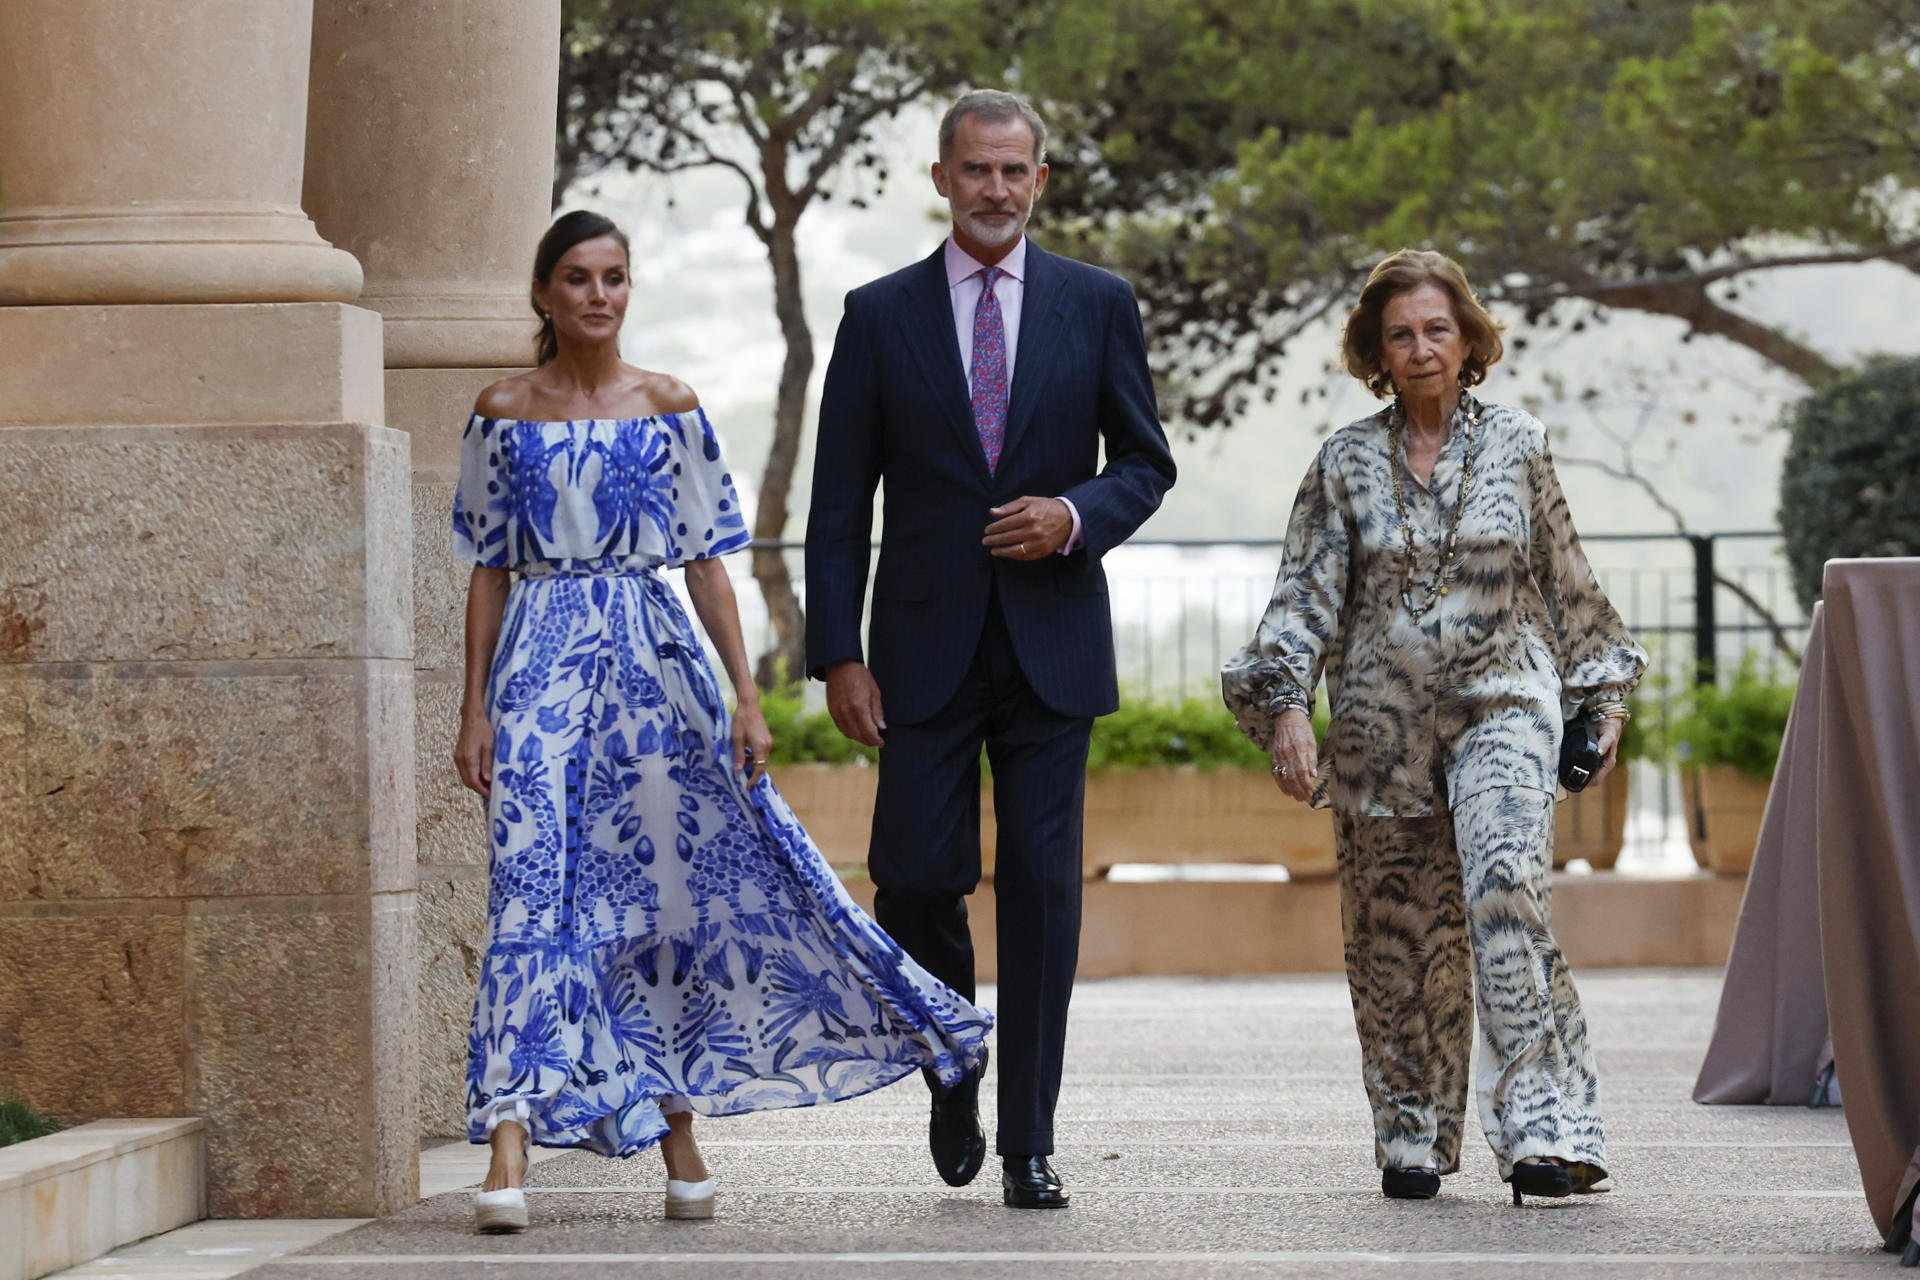 La reina Sofía desaconseja el divorcio a Felipe VI